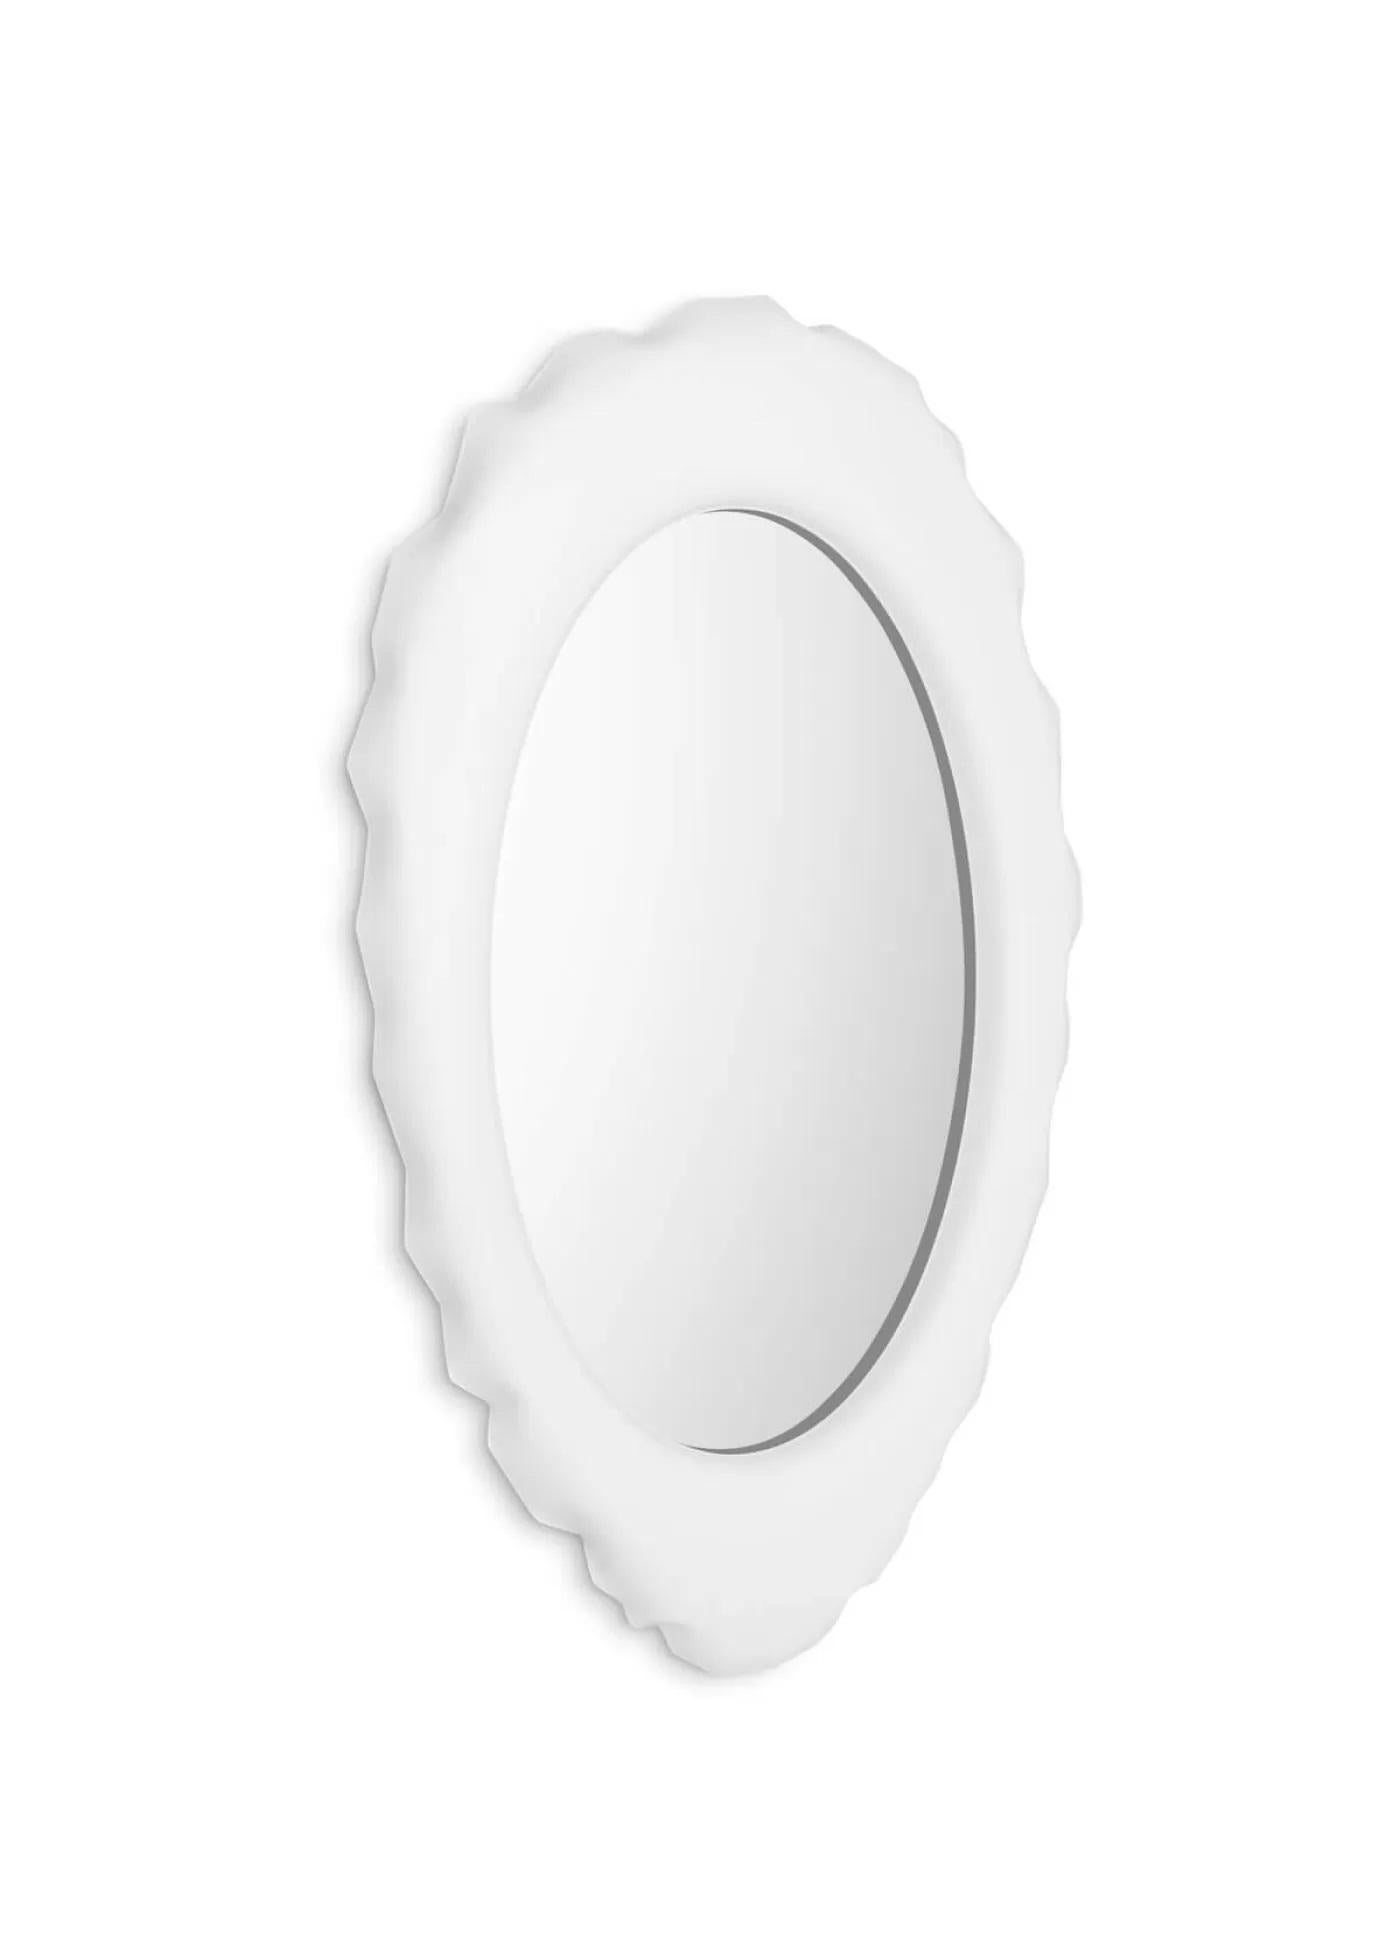 Miroir mural en silex blanc par Zieta
Dimensions : D 6 x L 75 x H 124 cm 
Matériau : Miroir, acier au carbone.
Finition : Revêtement en poudre blanc mat.
Également disponible en couleurs : acier inoxydable ou revêtement en poudre.


SILEX est une